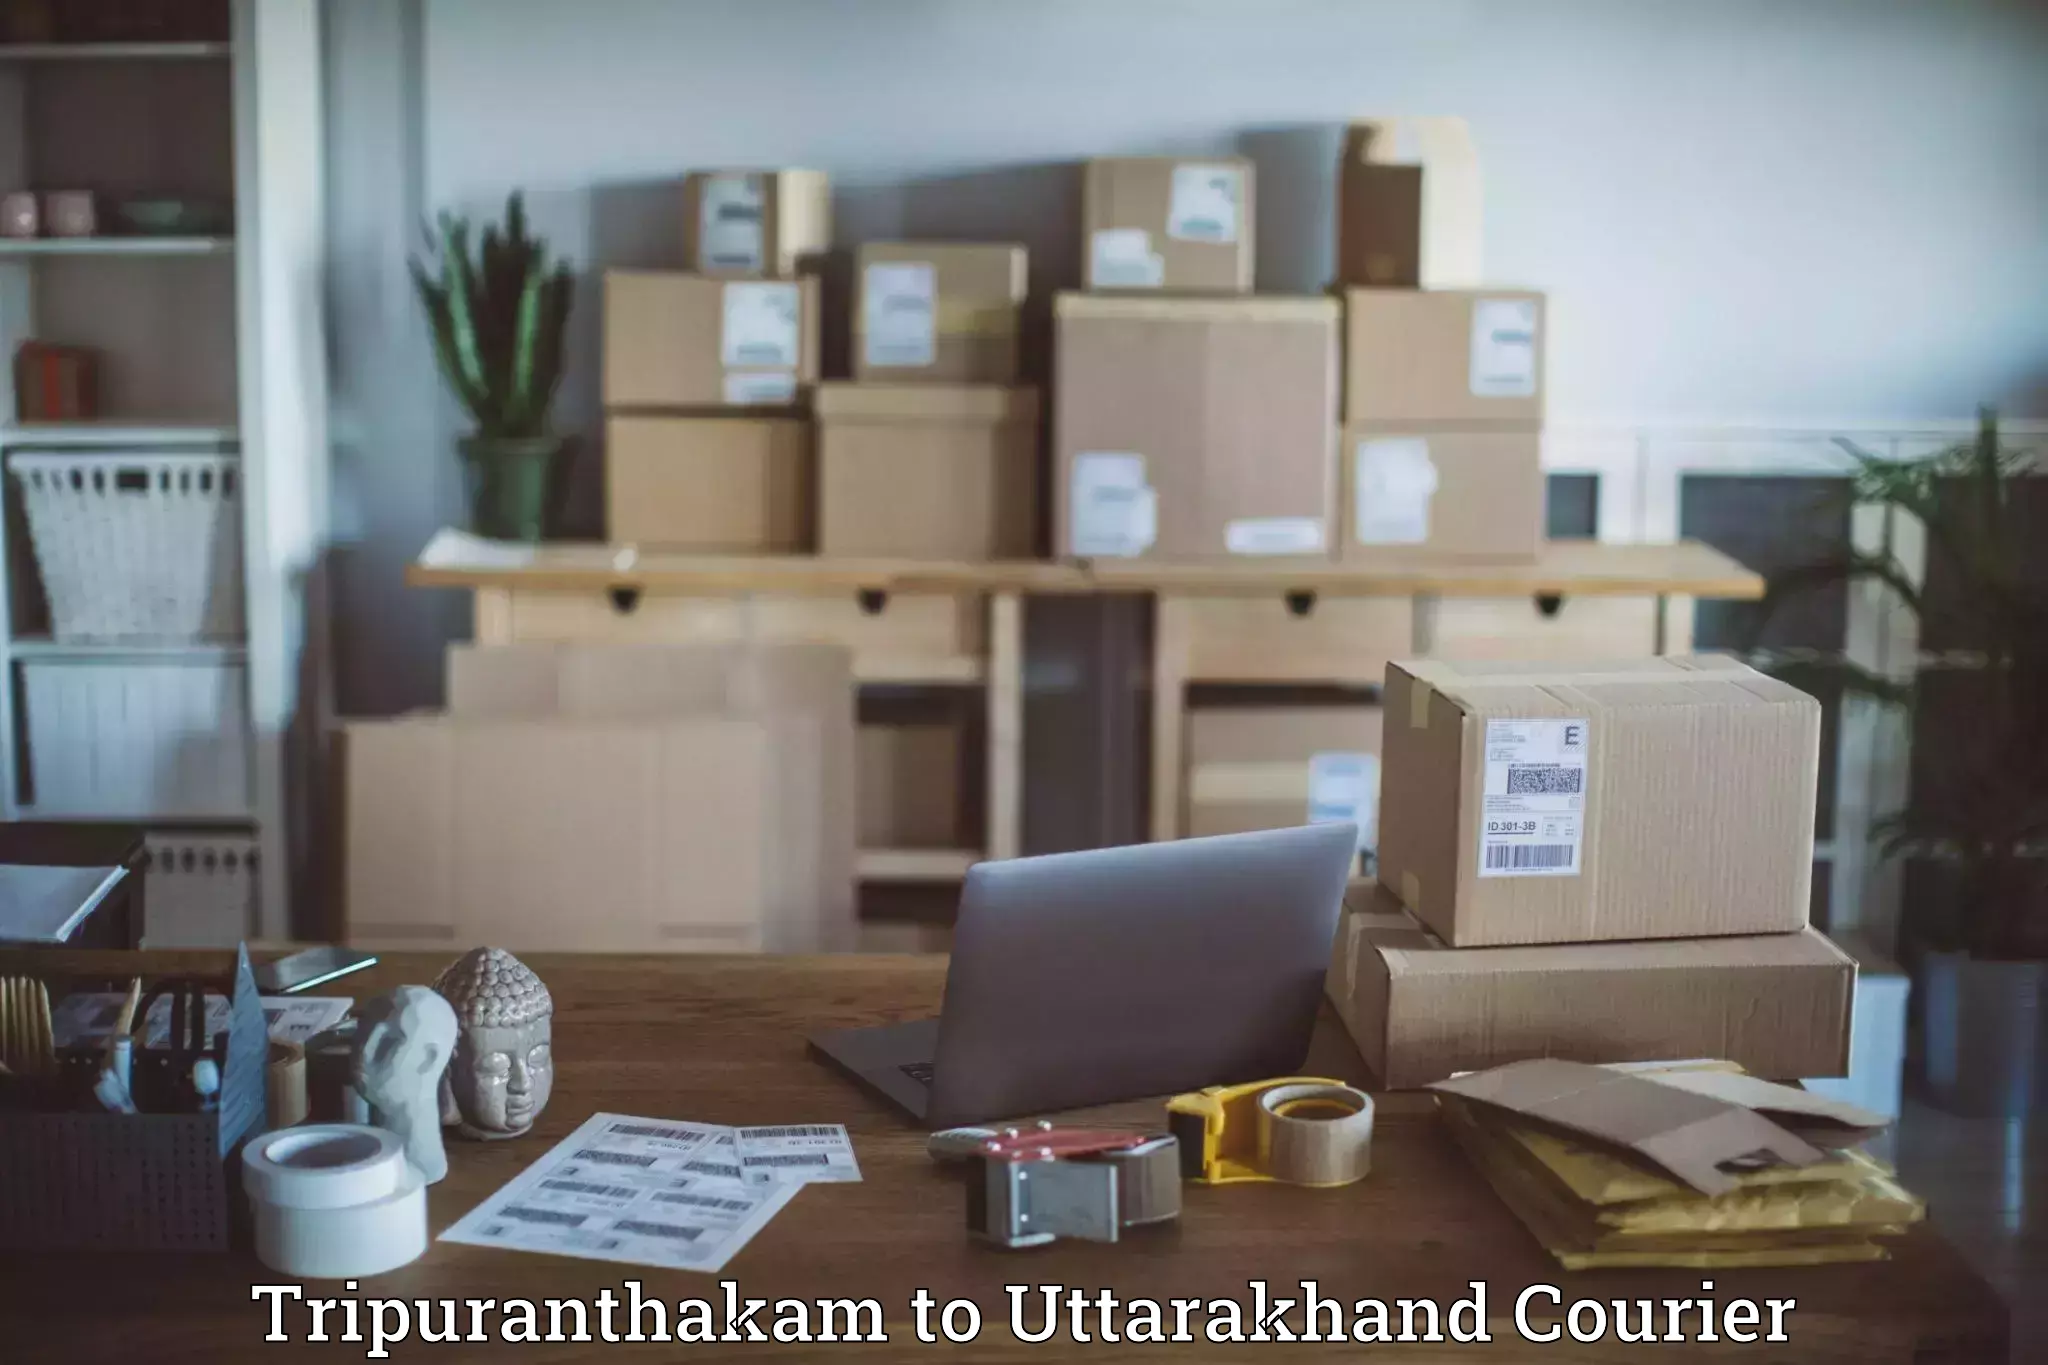 Multi-national courier services Tripuranthakam to Uttarakhand